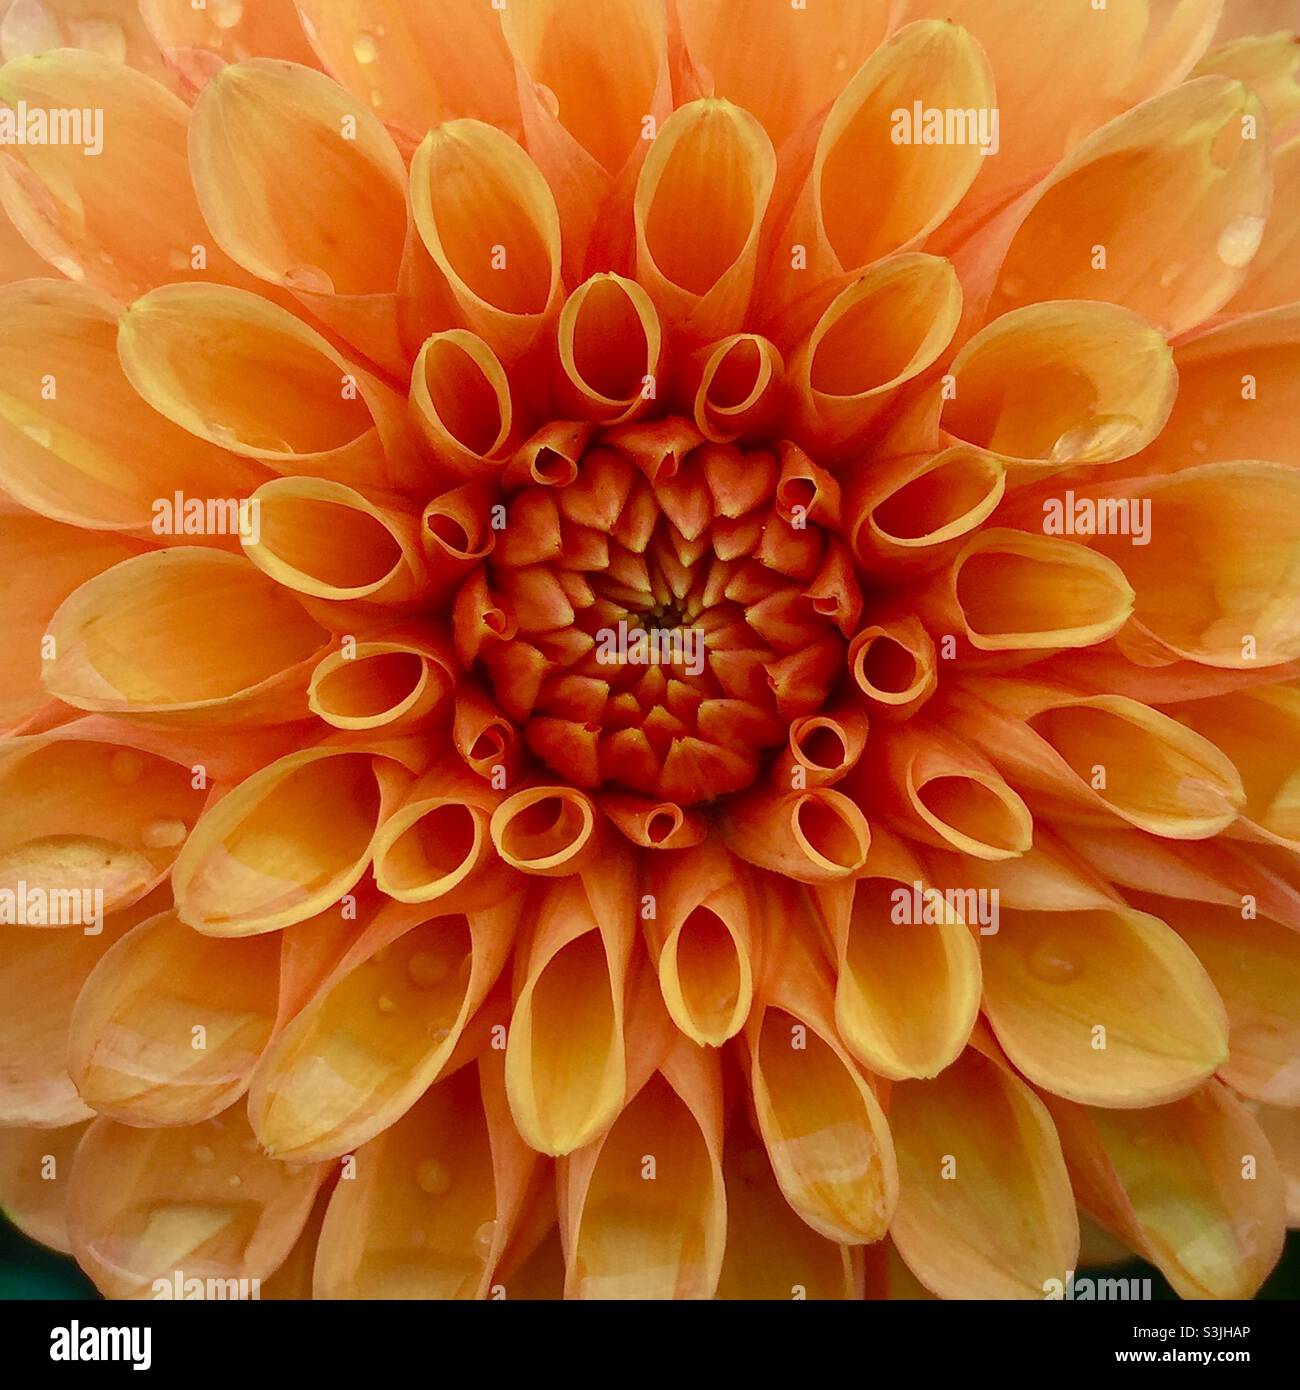 Gros plan de la fleur de dahlia orange Banque D'Images